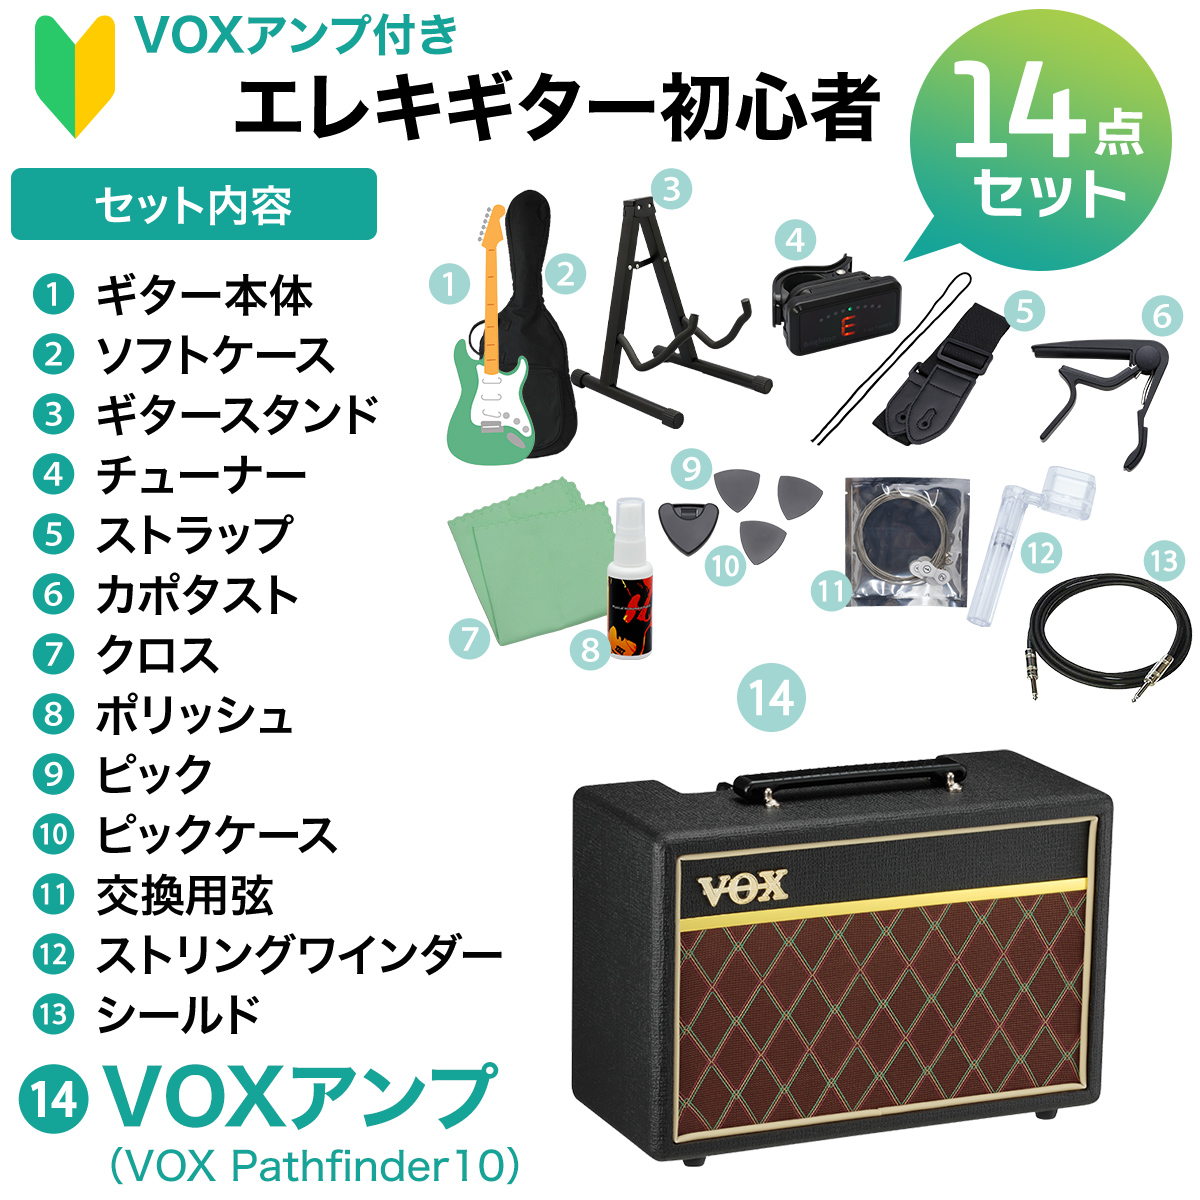 YAMAHA RSE20L エレキギター初心者14点セット 【VOXアンプ付き】 REVSTARシリーズ 左利き用 ヤマハ